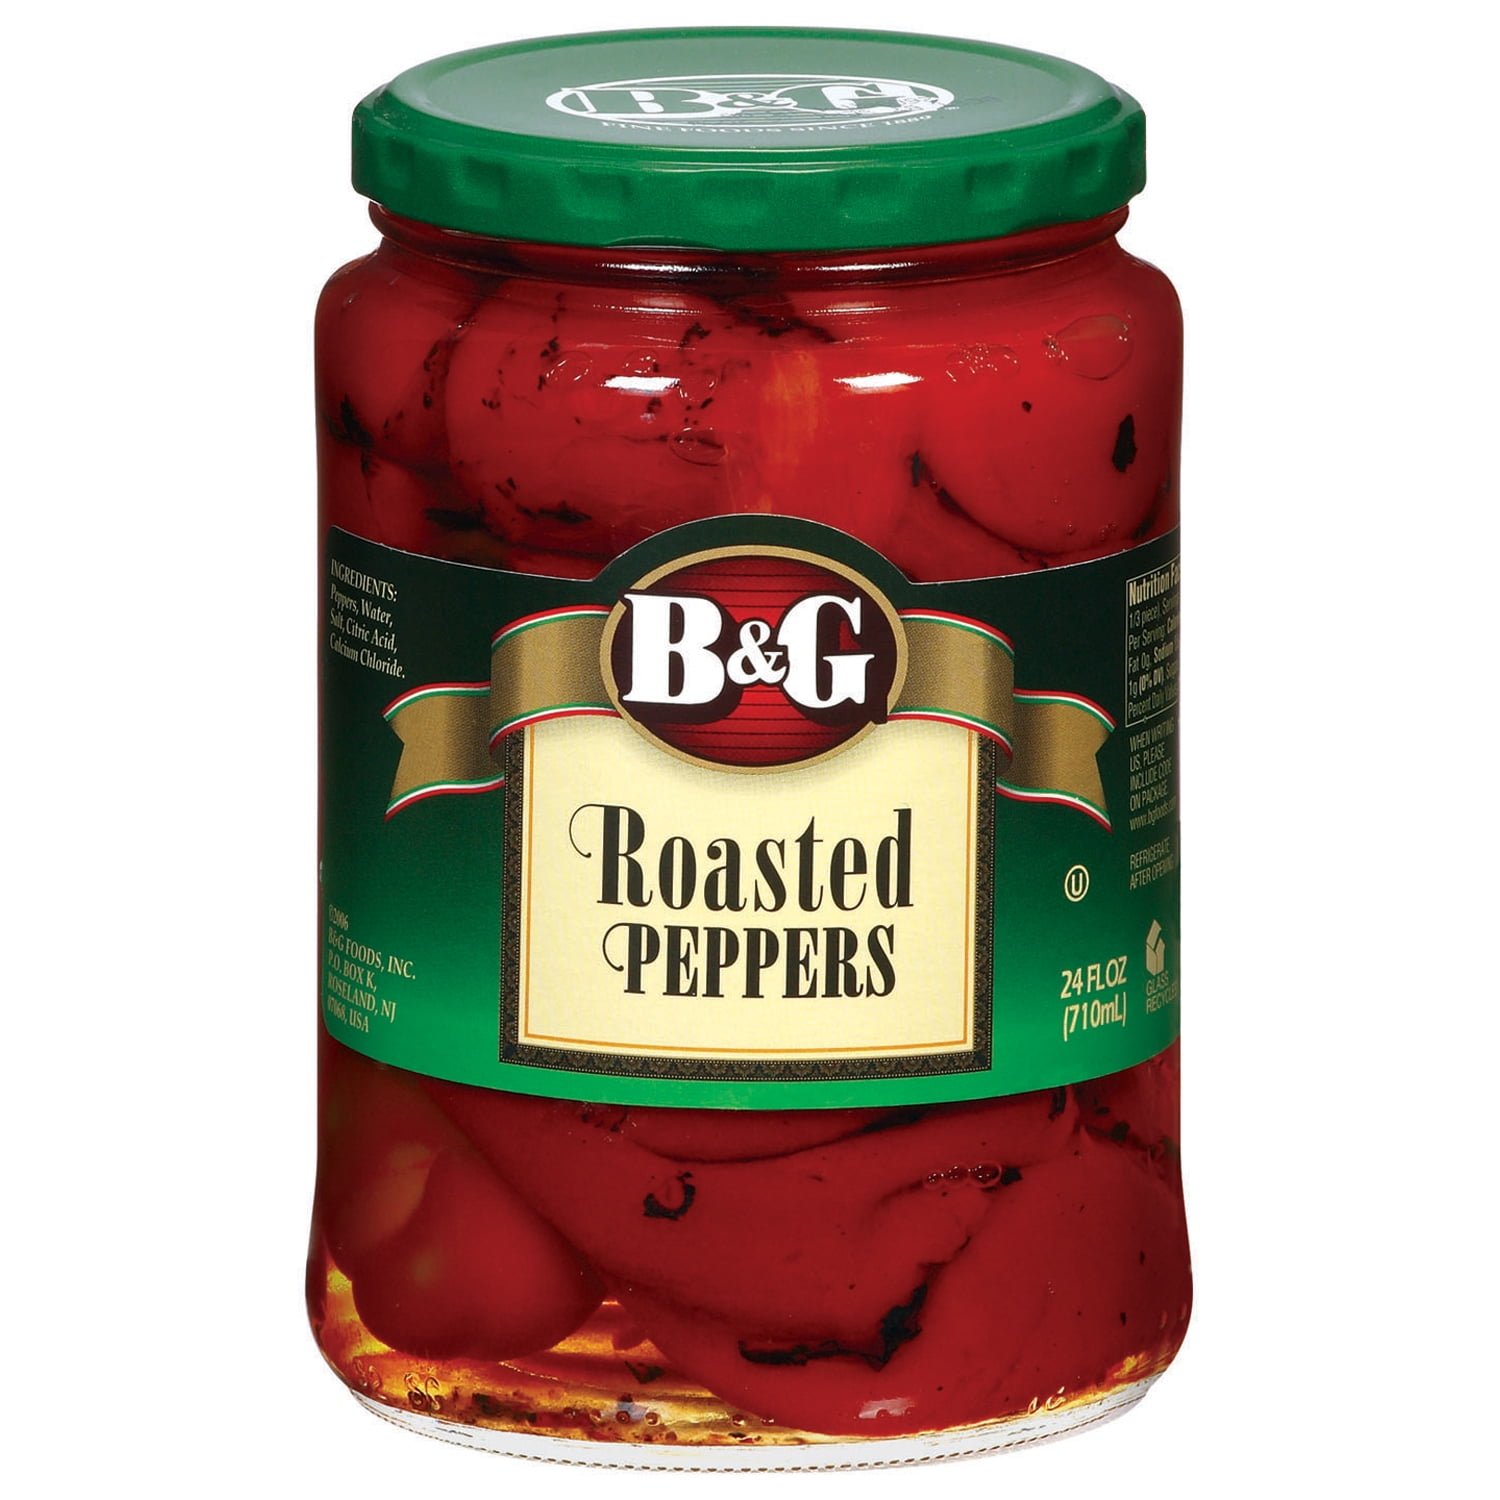 B&G Roasted Peppers, Jarred Vegetables, 24 fl oz